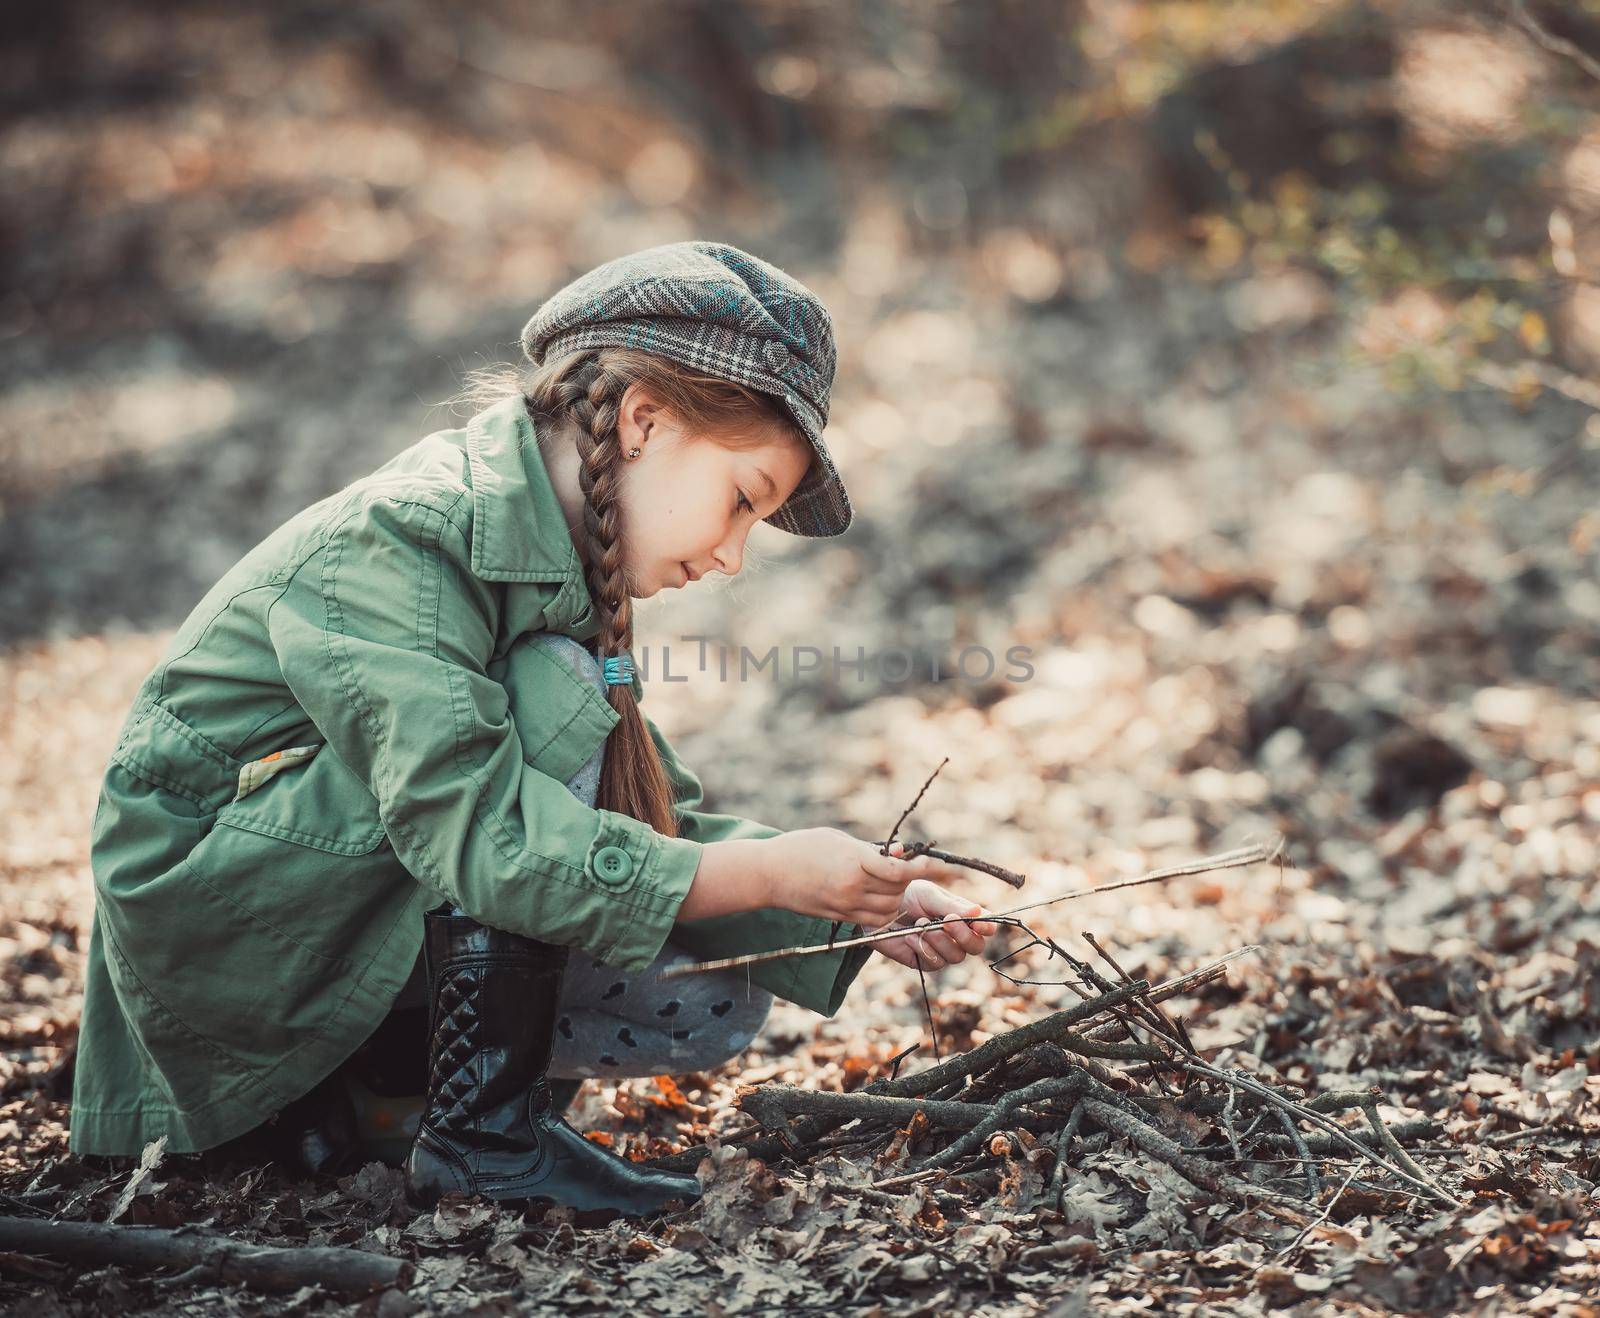 little girl making a bonfire by GekaSkr